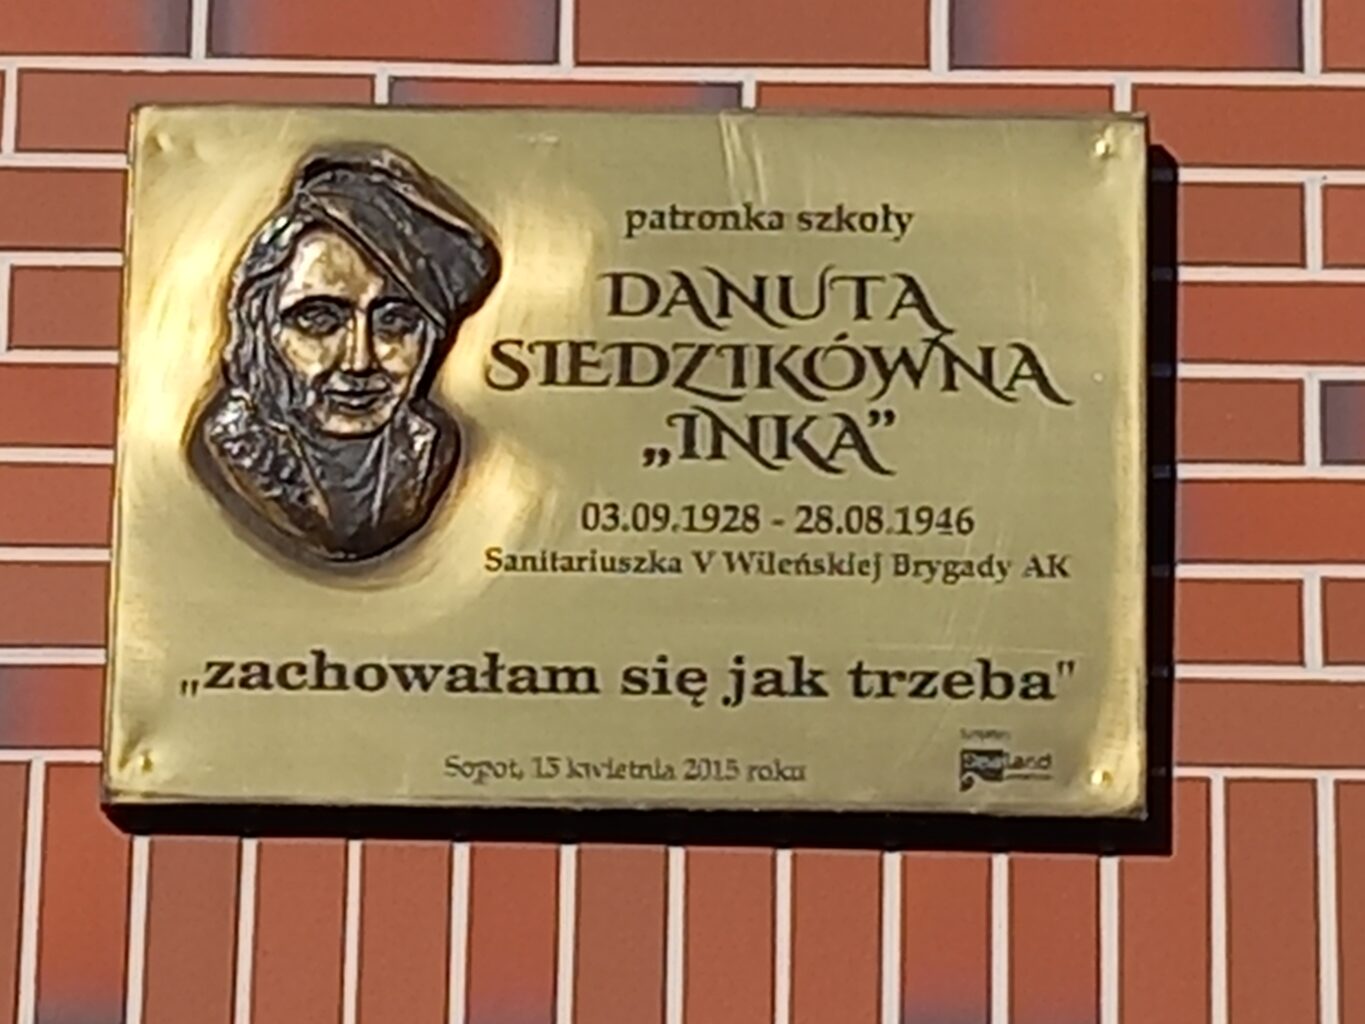 Tablica upamiętniająca Danutę Siedzikównę „Inkę” 
na budynku Zespołu Szkół Technicznych w Sopocie
(Fot. Tomasz Neumann).
